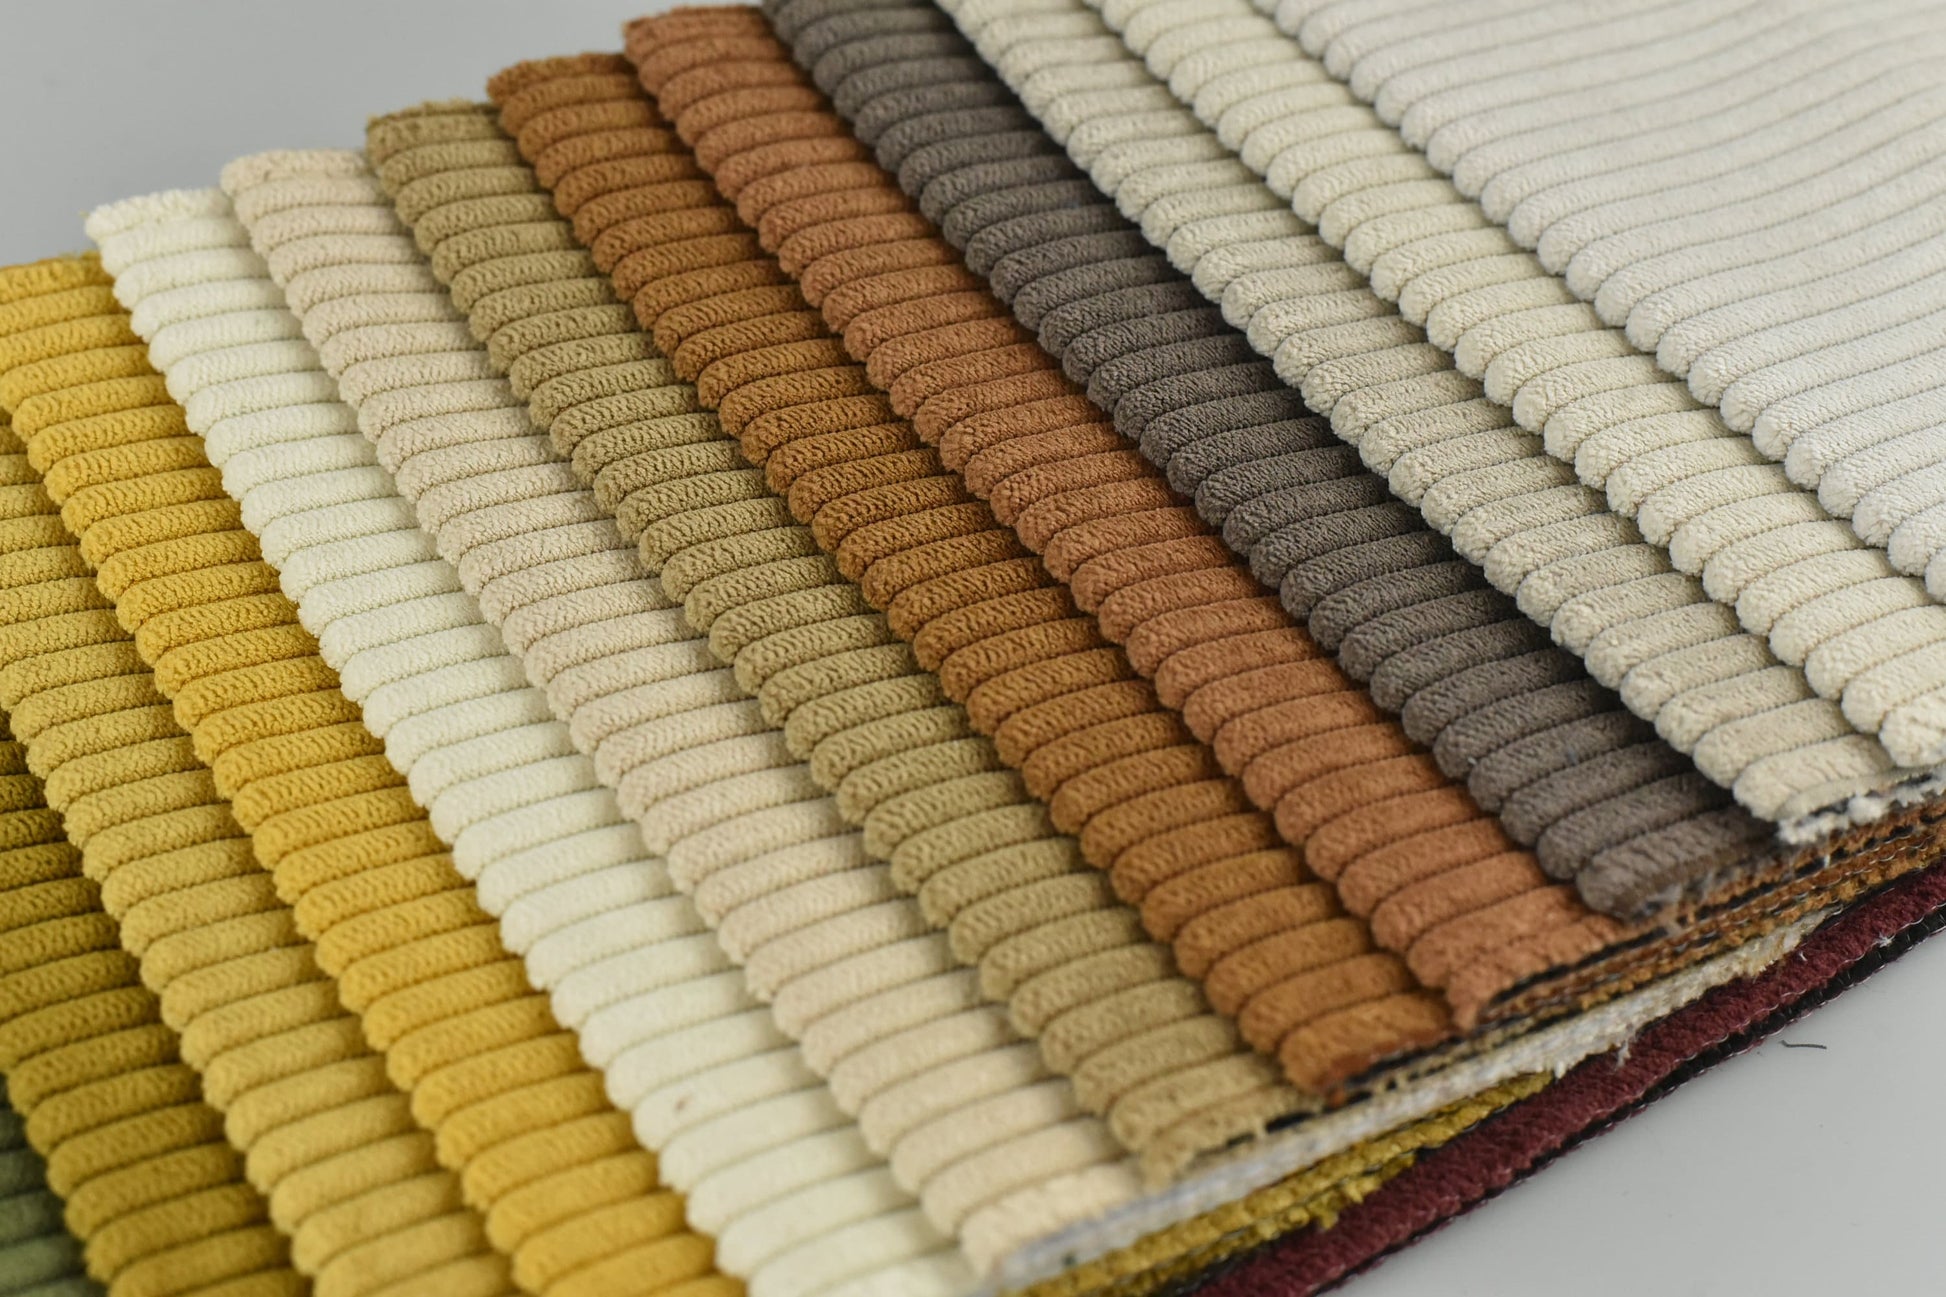 Heavy Duty Corduroy Srtip Velvet Upholstery Fabrics|Vintage Corduroy Upholstery Fabric For Chair Sofa|Corduroy Upholstery Fabric By The Yard